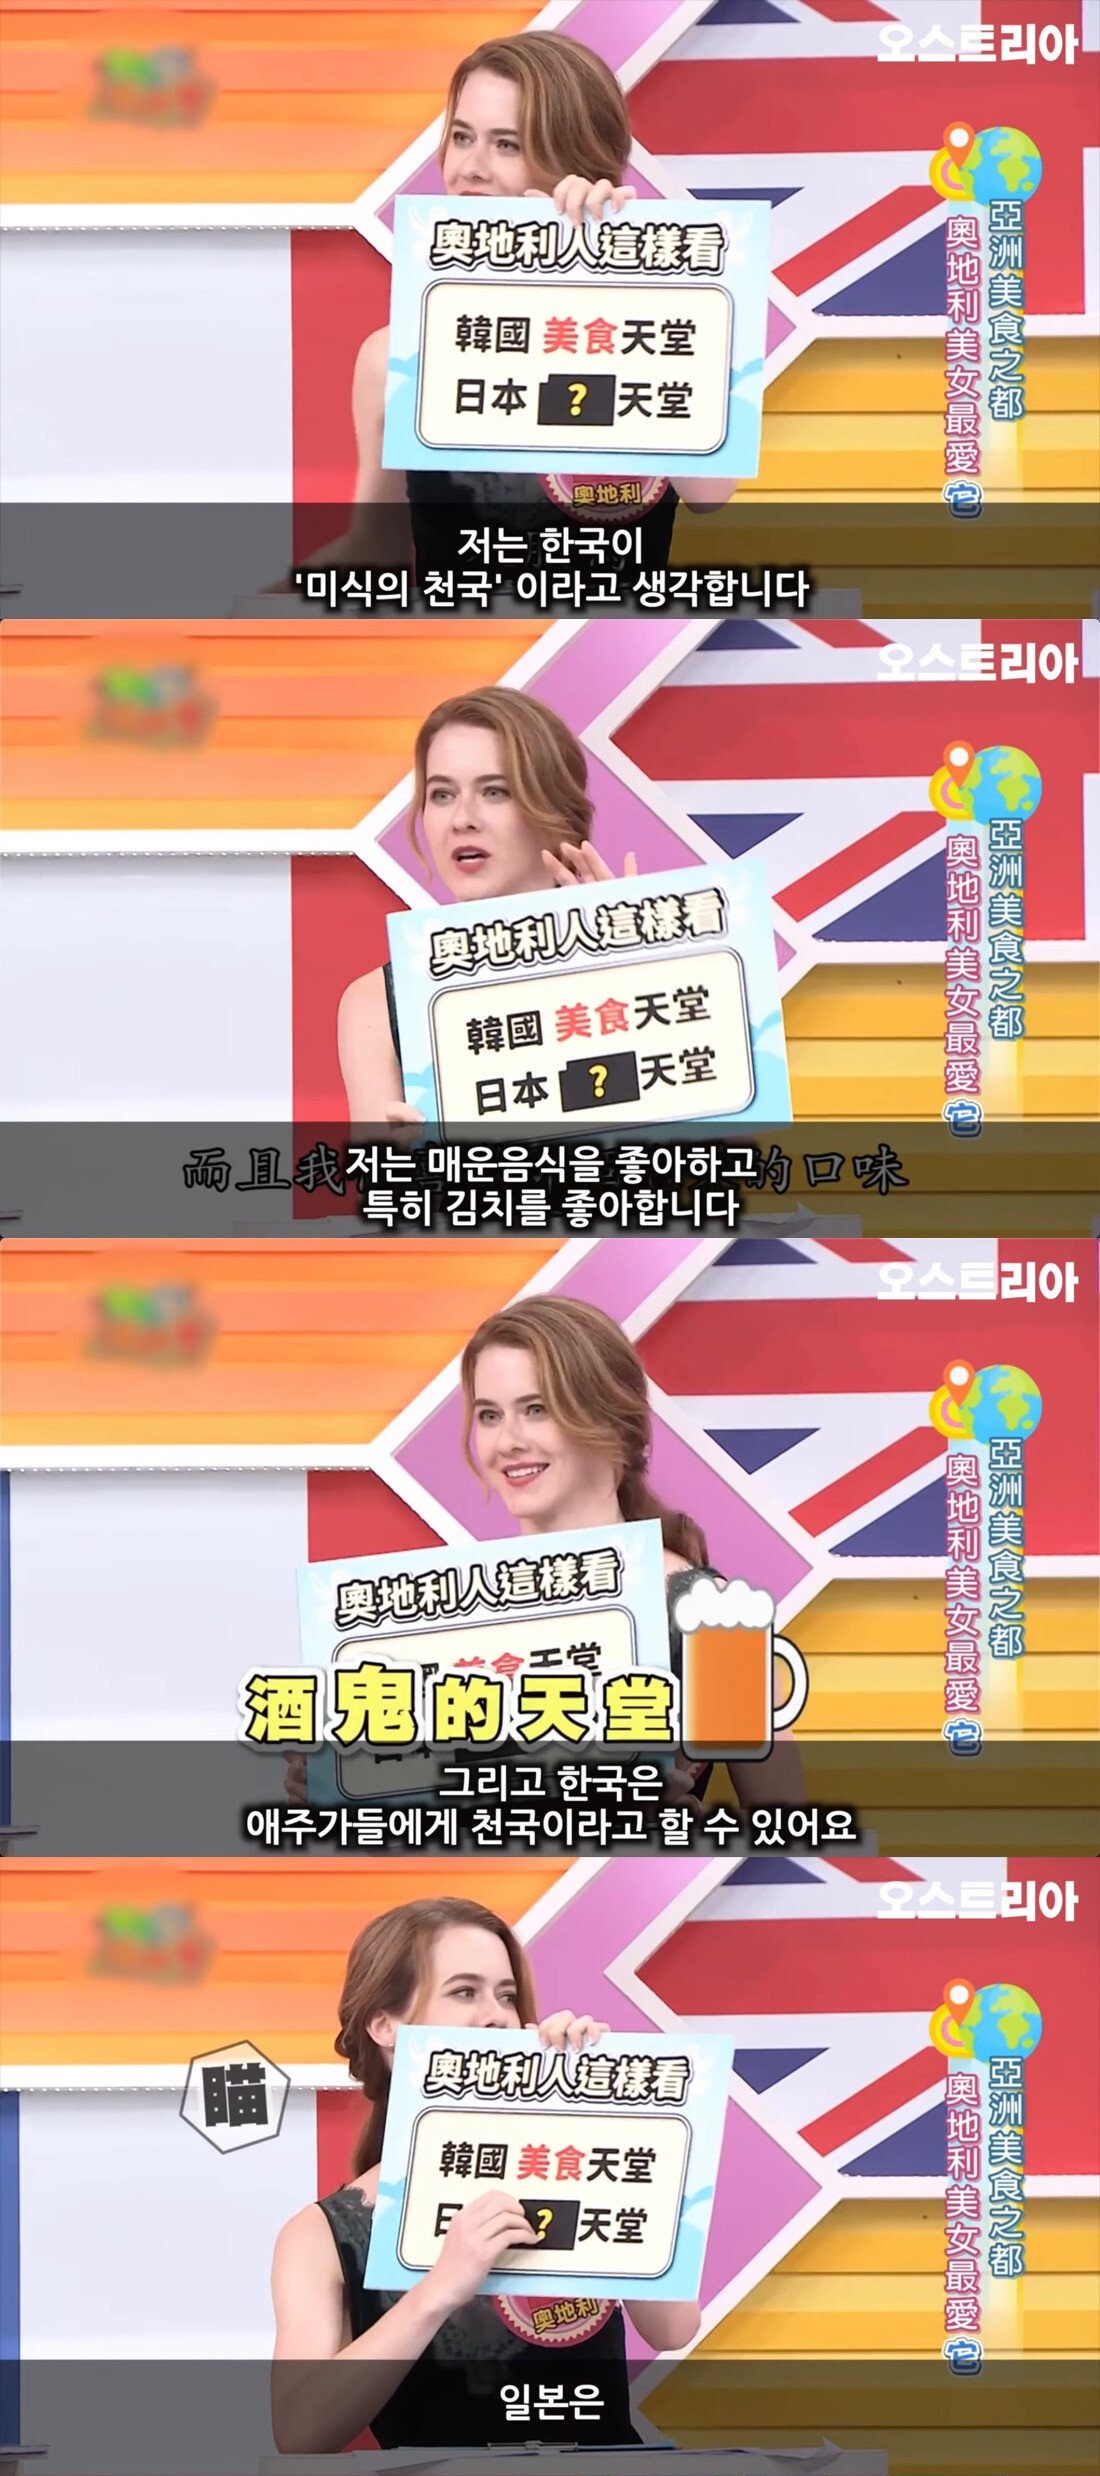 대만방송에서 한국 좋아하는 외국인들